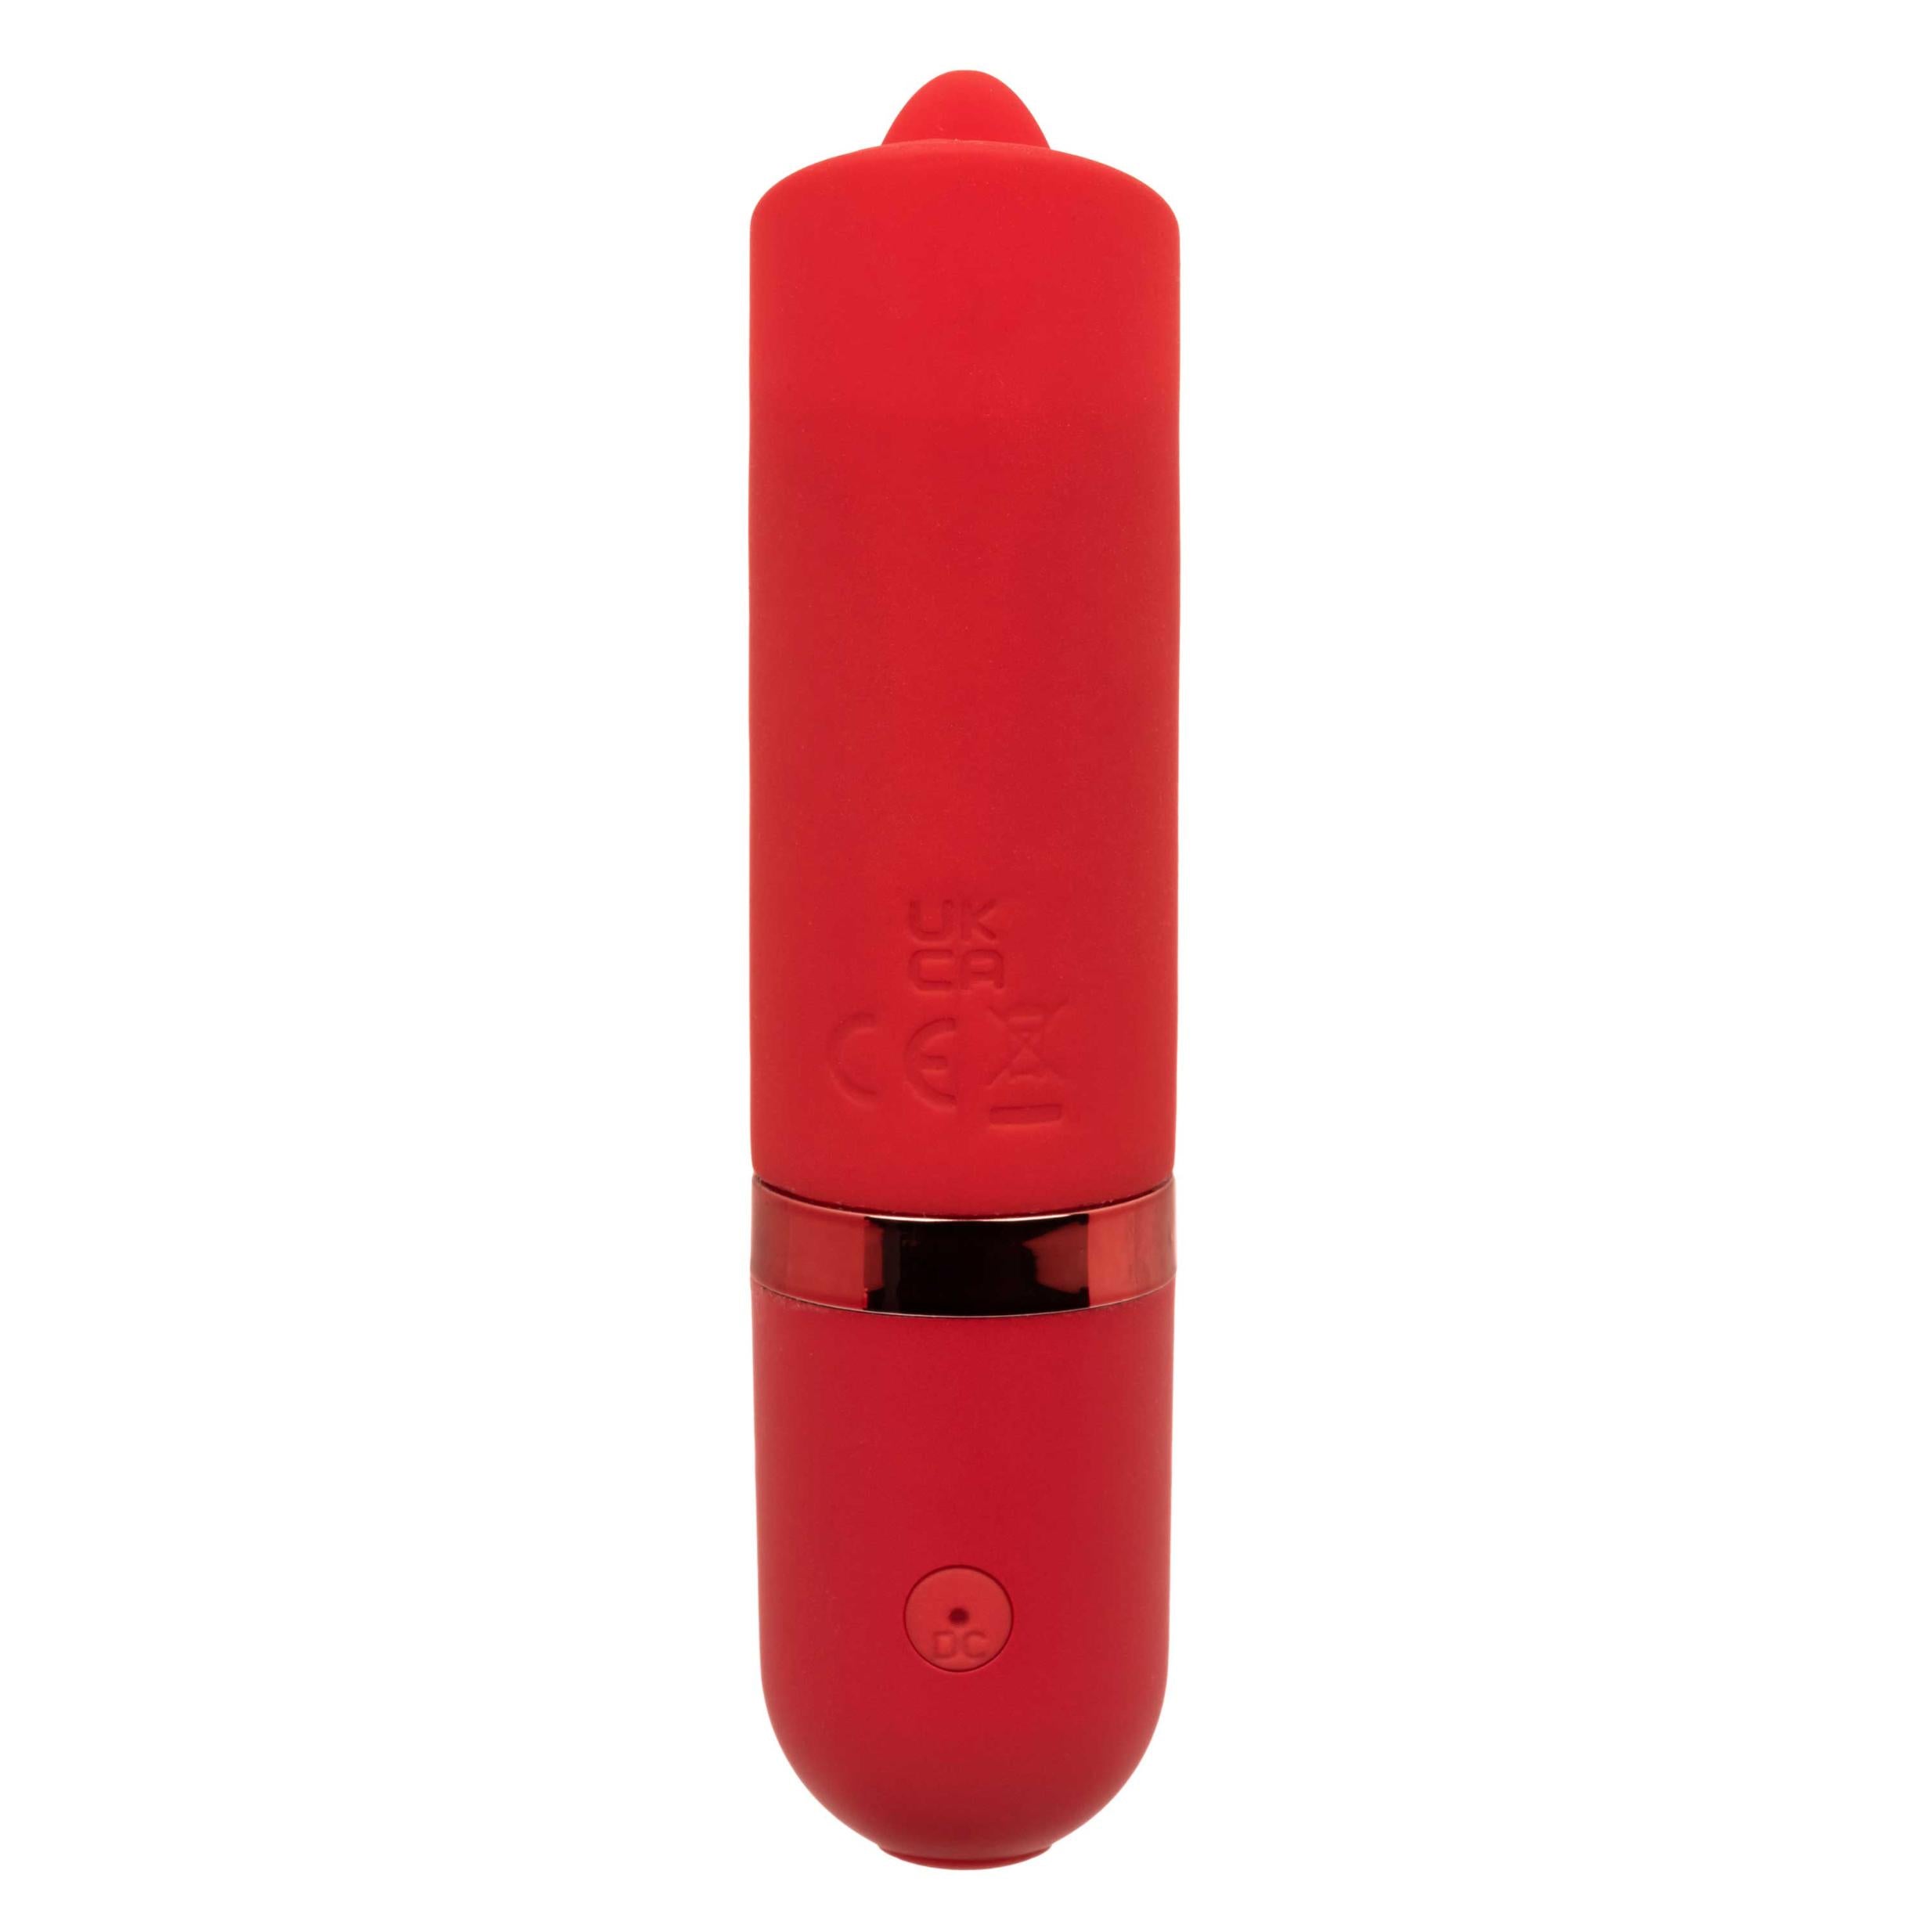 Kyst Flicker Bullet Vibrator - Red